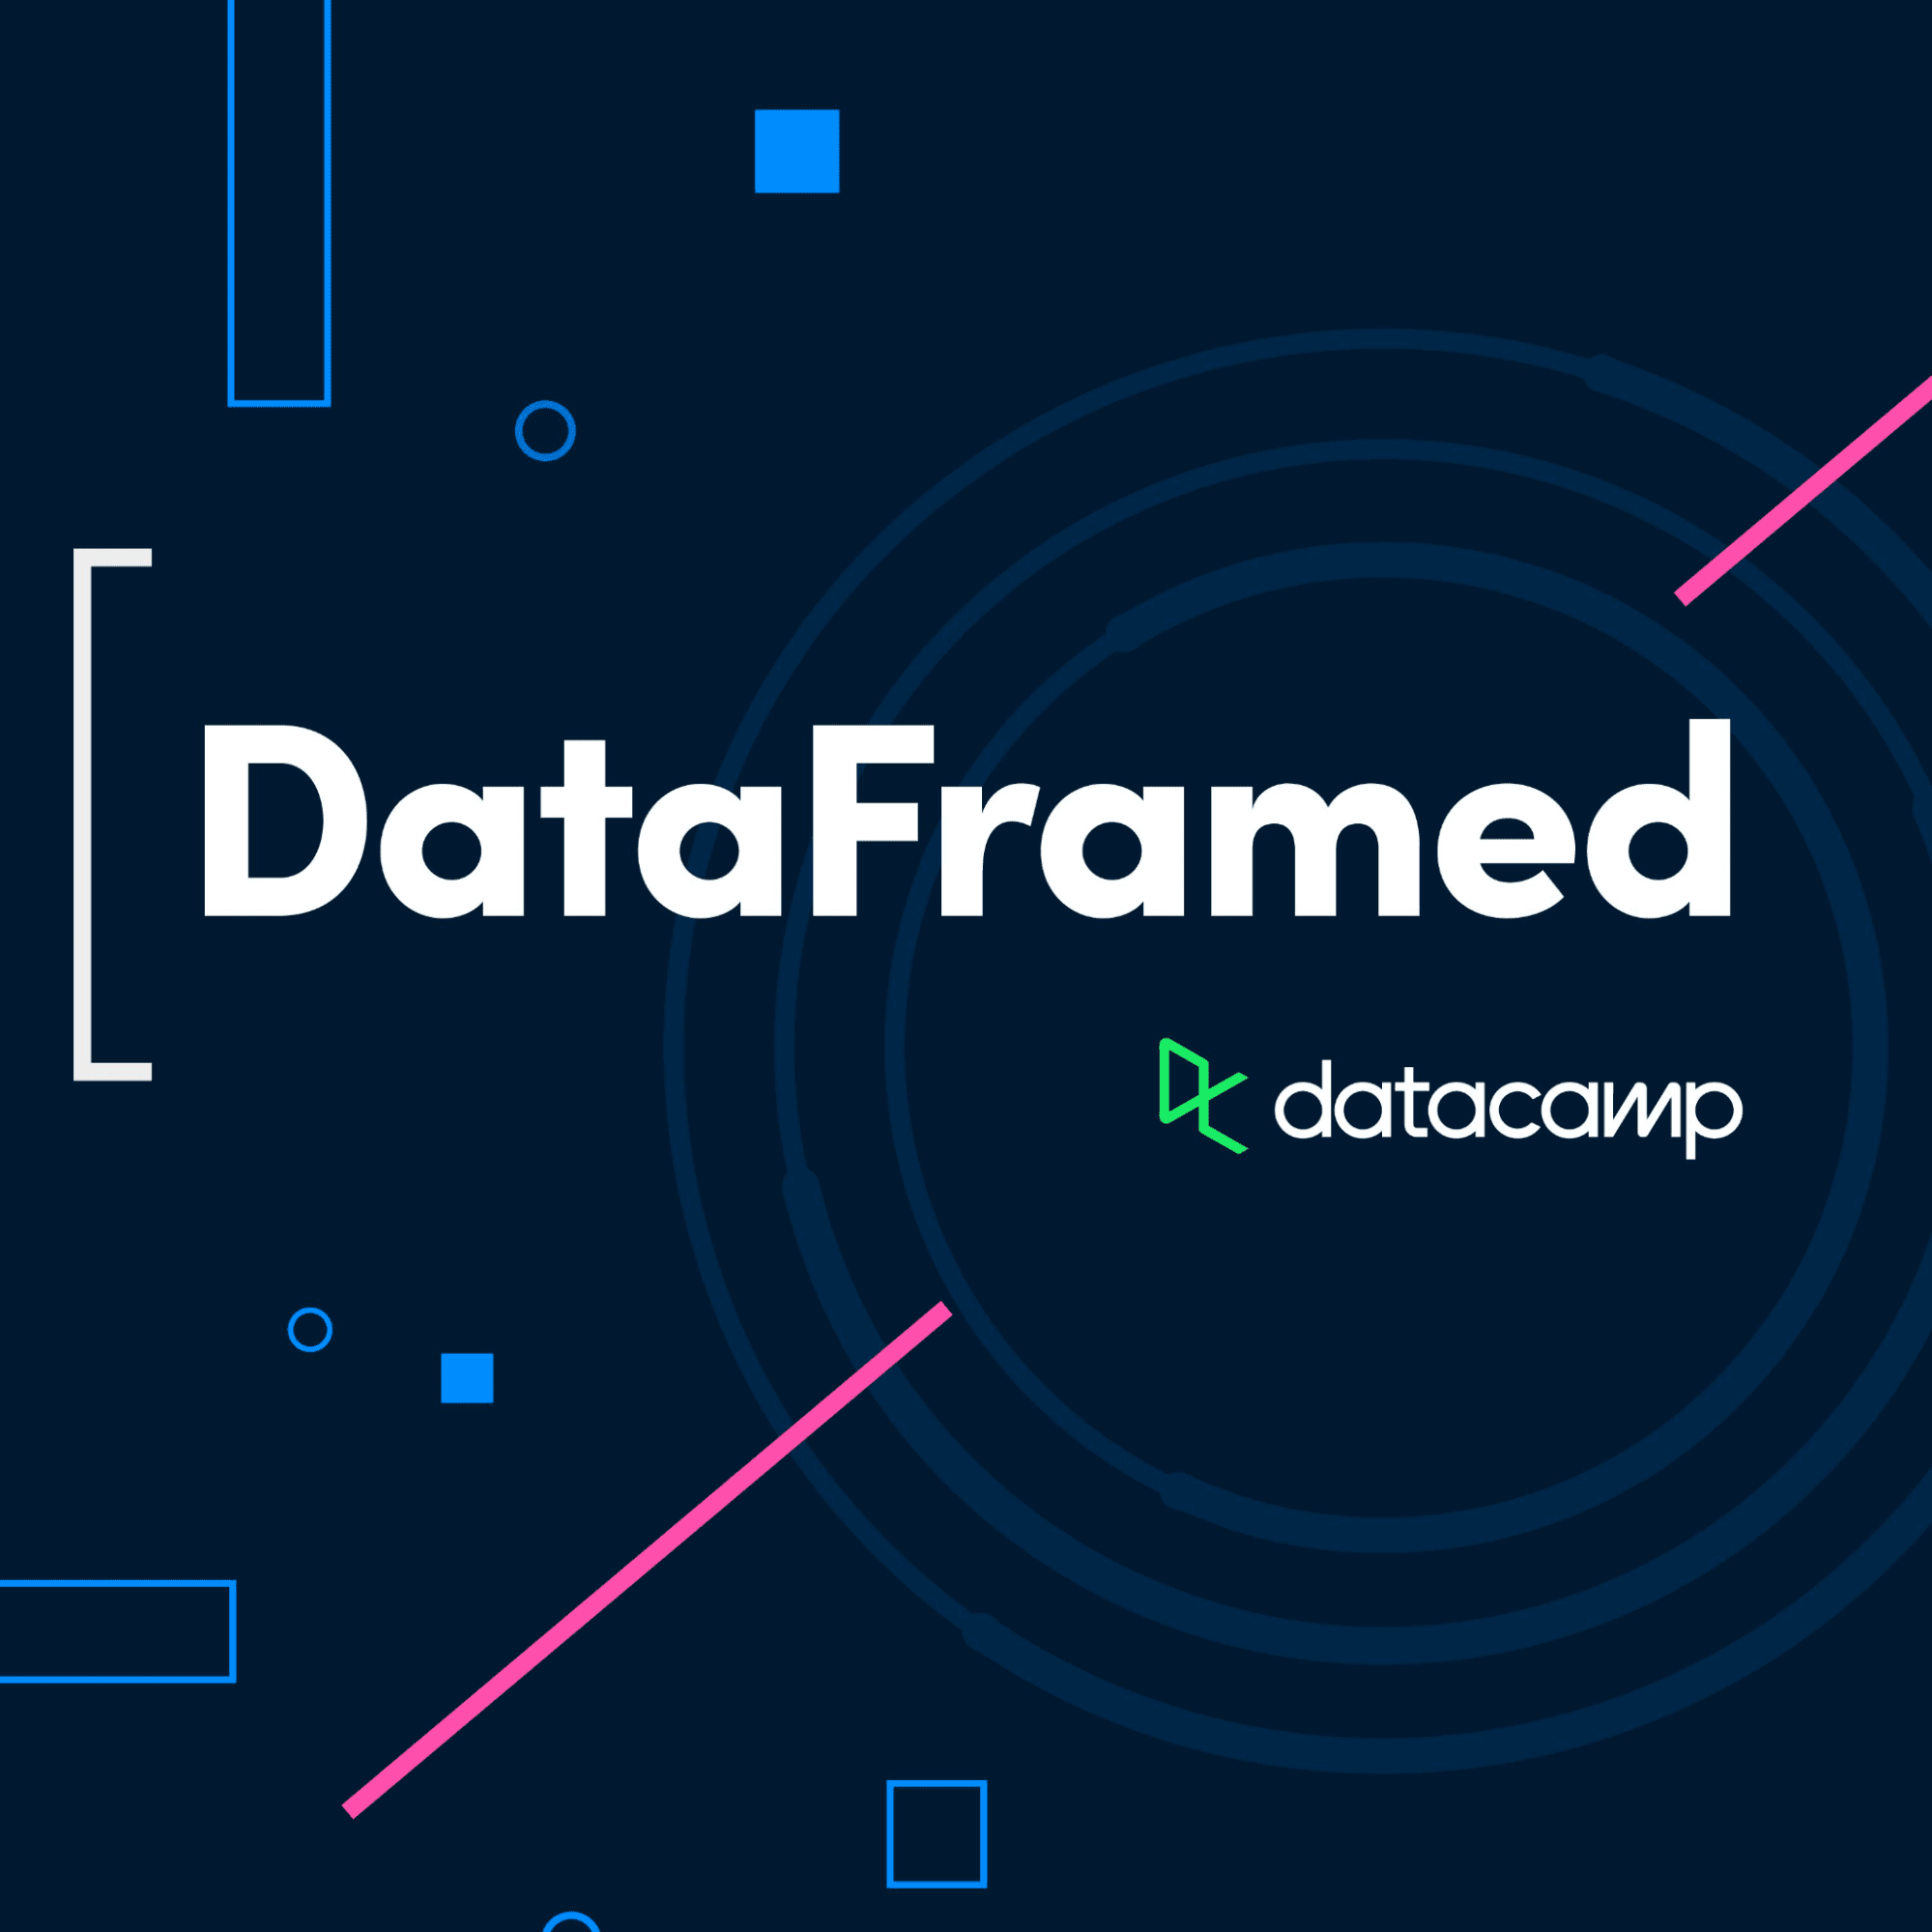 DataFramed